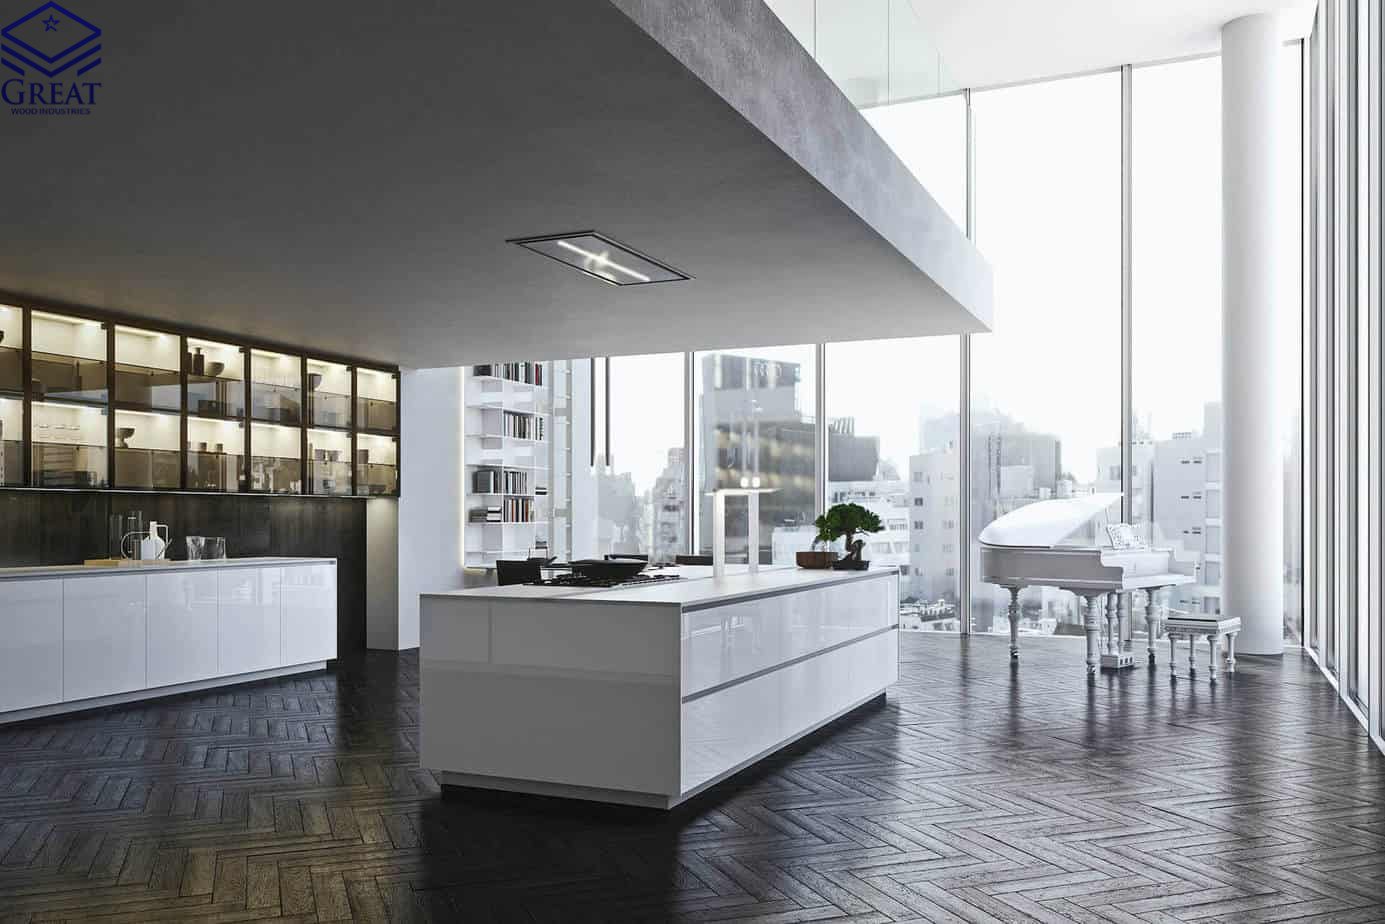 گریت کابینت | شرکت کابینت آشپزخانه گریت | High Gloss White Kitchen Cabinets 1